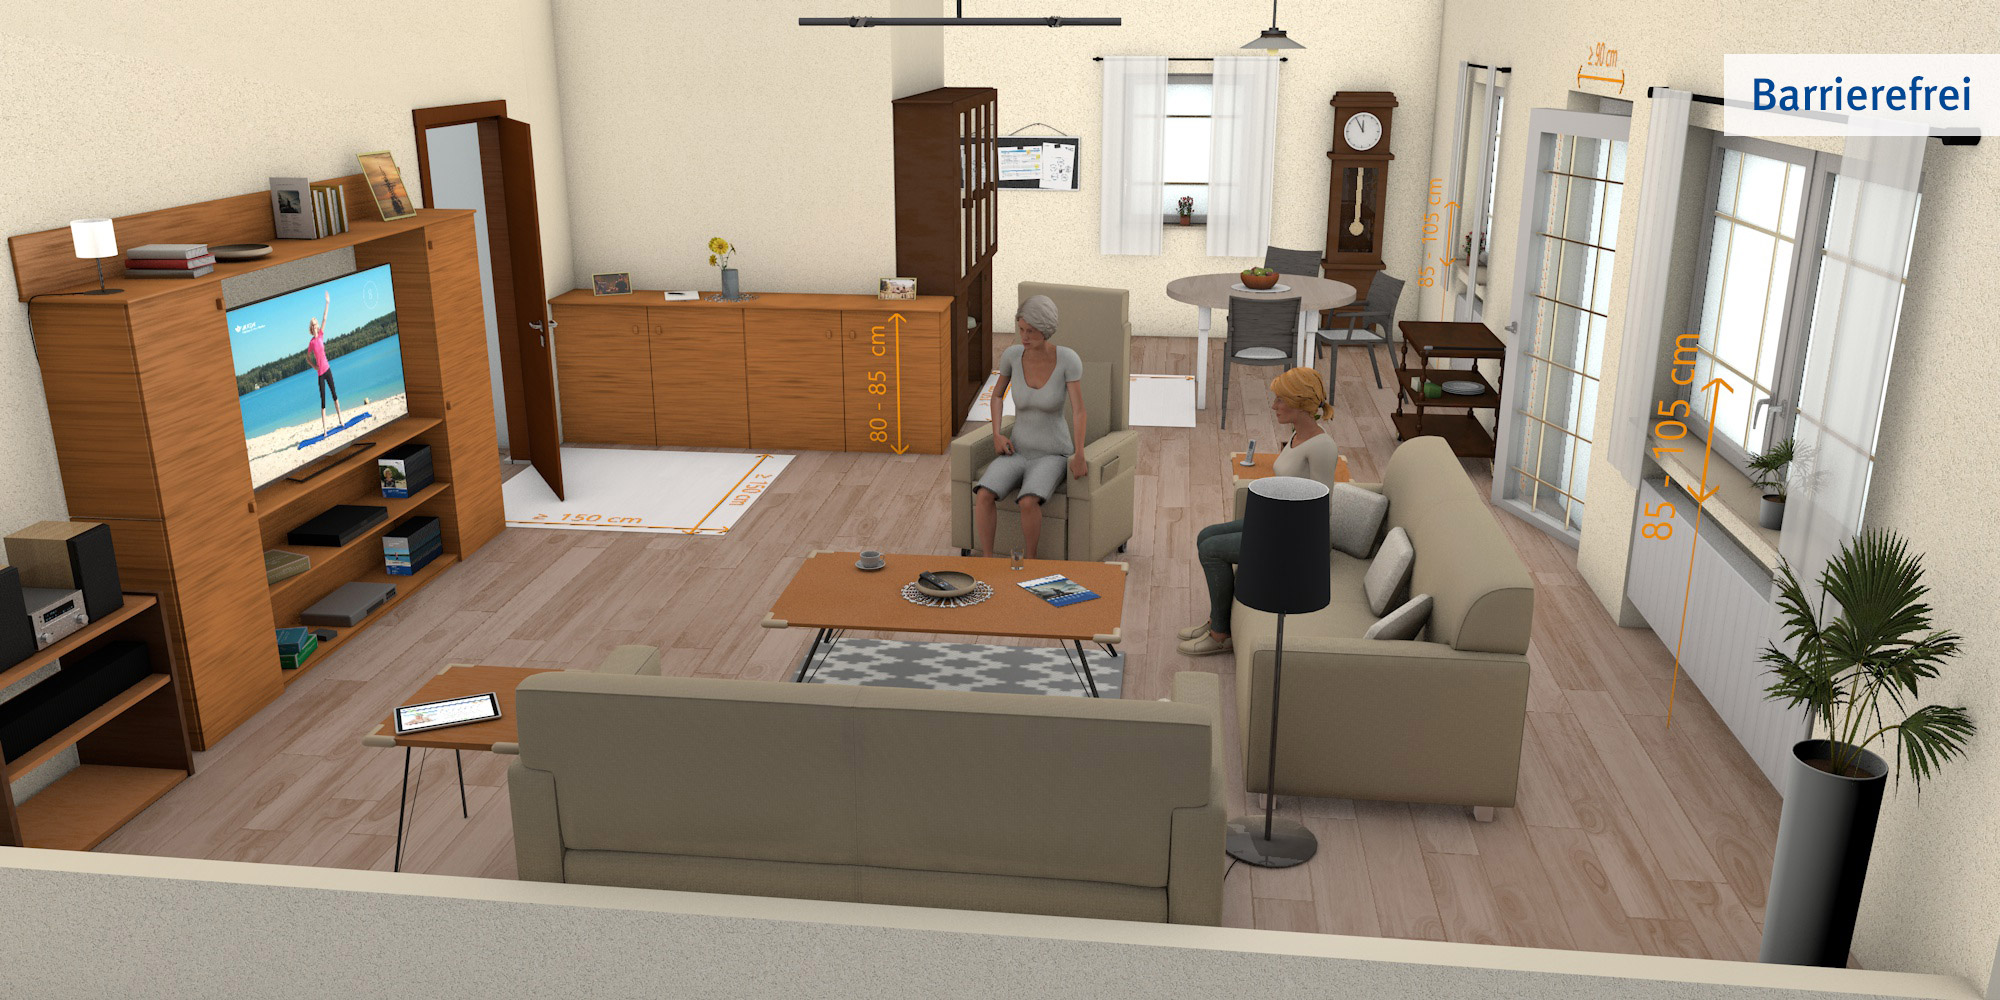 Wohnzimmer - optimierte Version